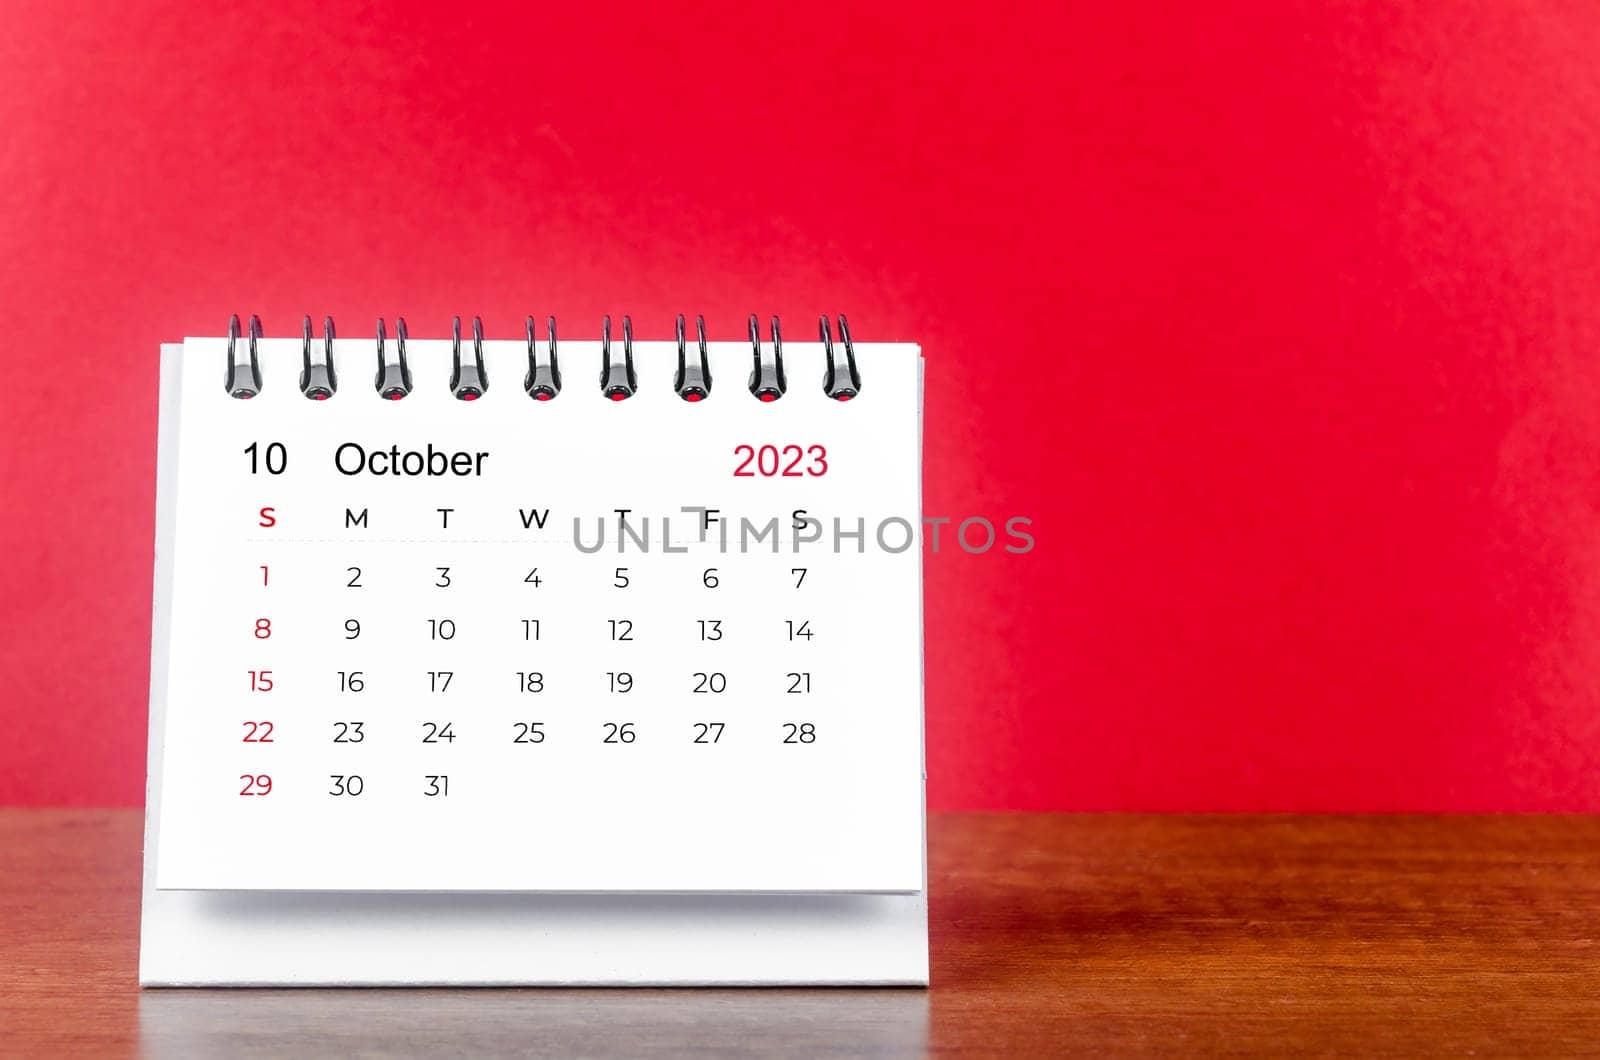 October 2023 desk calendar for 2023 year on Red color background.